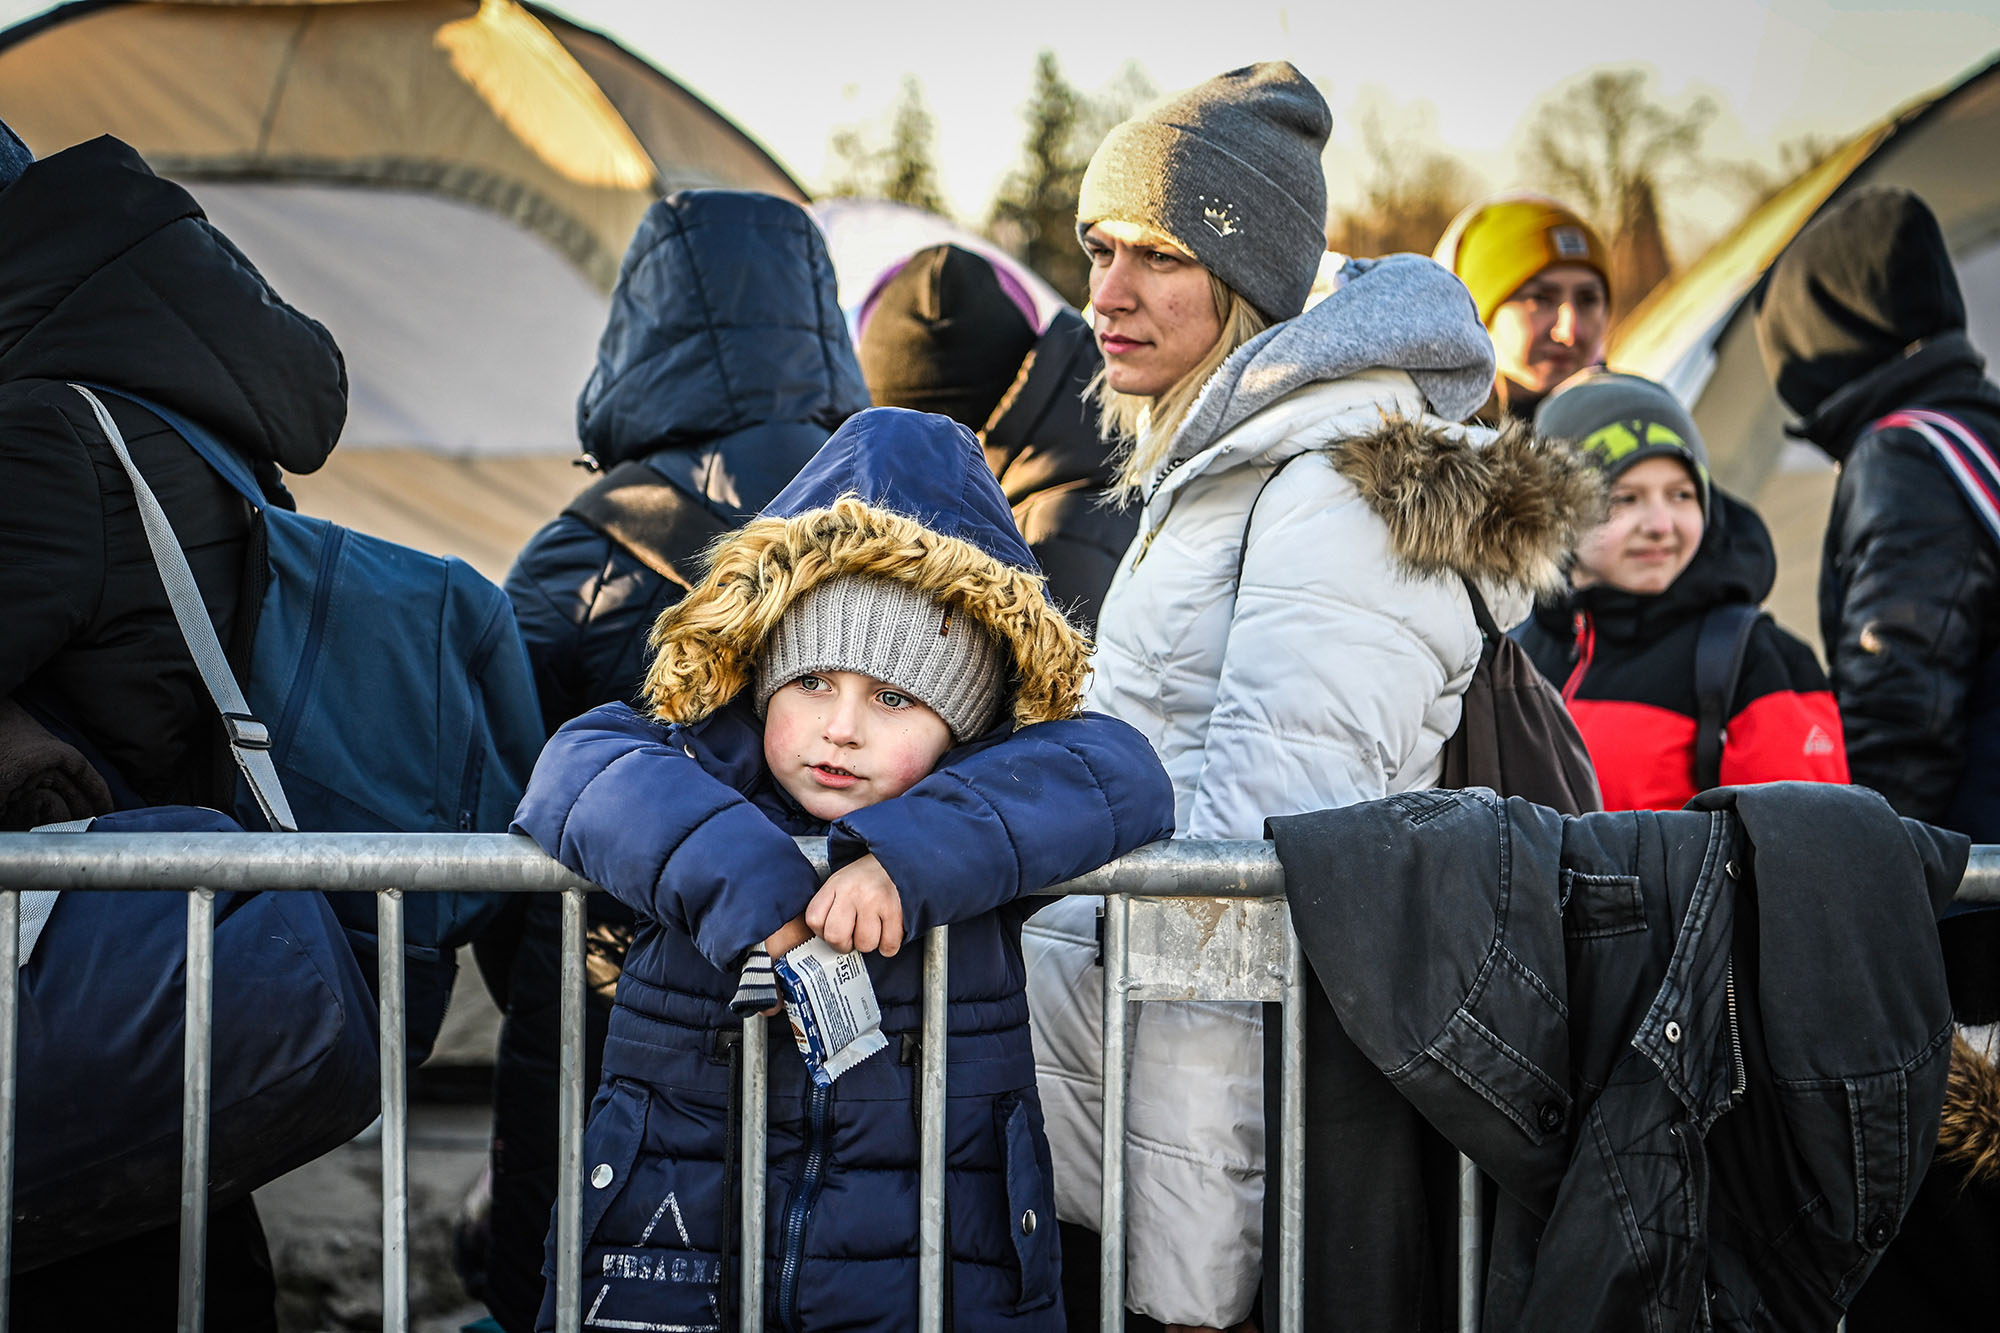 Ucraina, allarme Unicef: "Oltre 500 bambini soli al confine con la Romania rischiano tratta e sfruttamento"